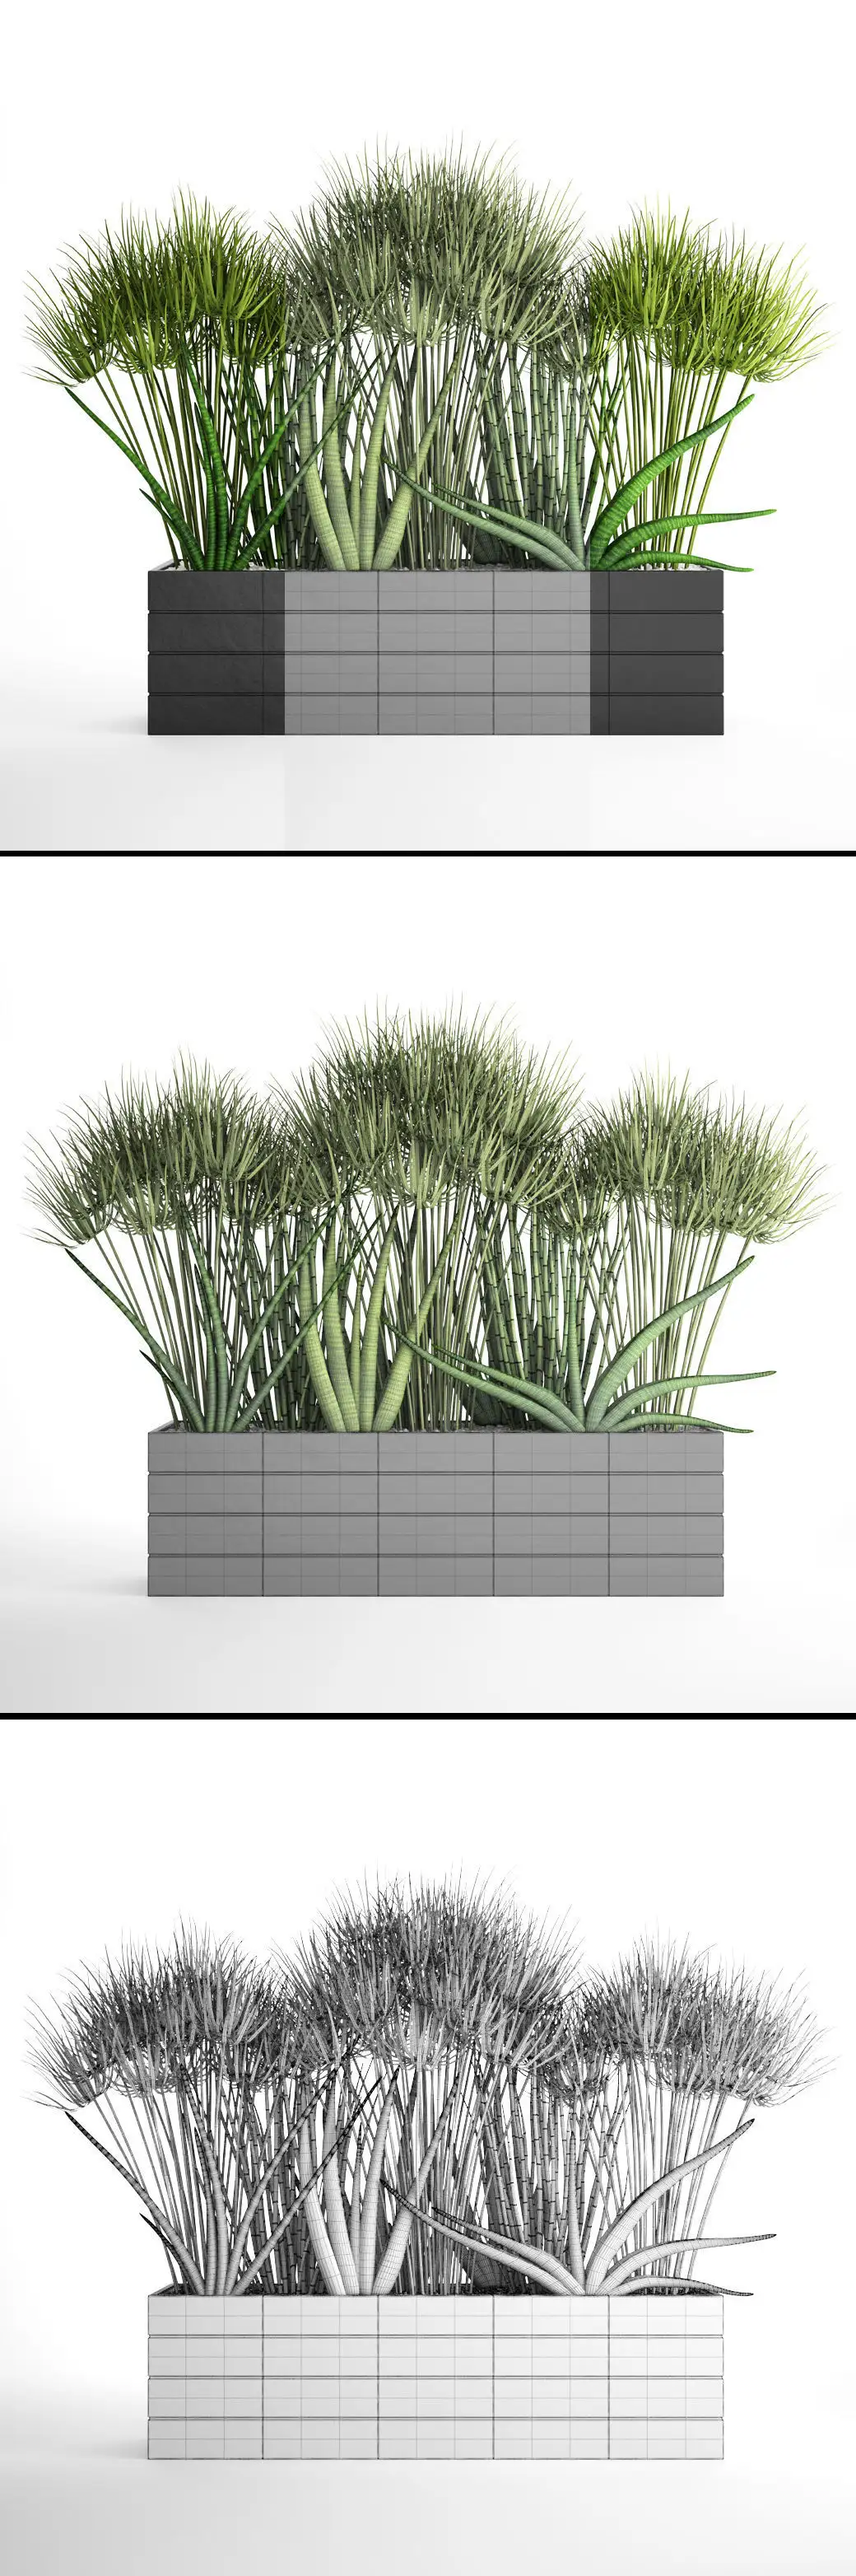 دانلود مدل سه بعدی گیاهان آپارتمانی 40 - 22